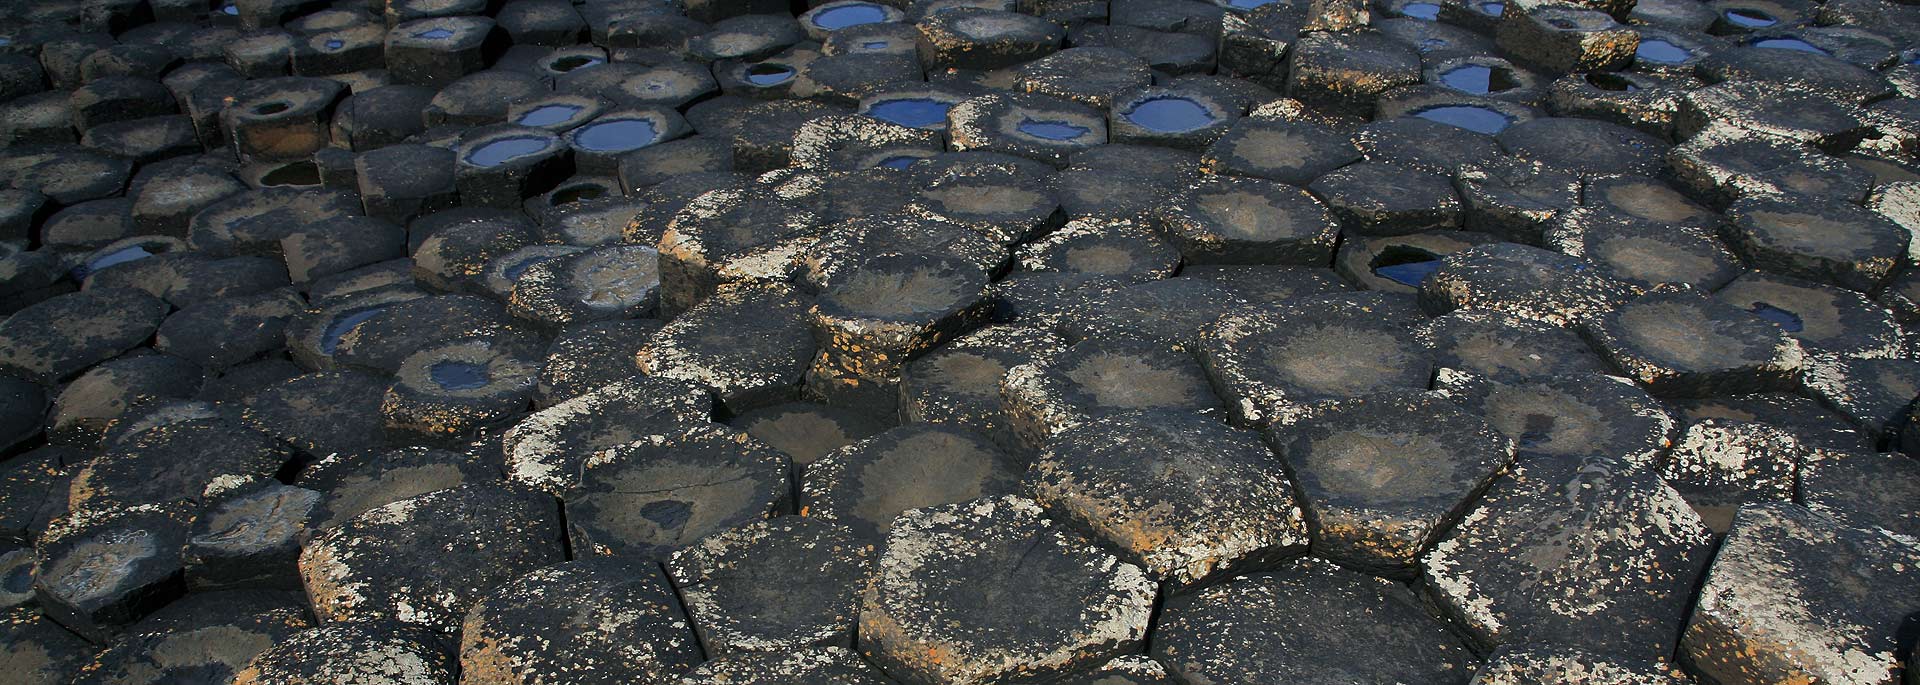 Der Giant's Causeway - und warum einmal keinmal ist